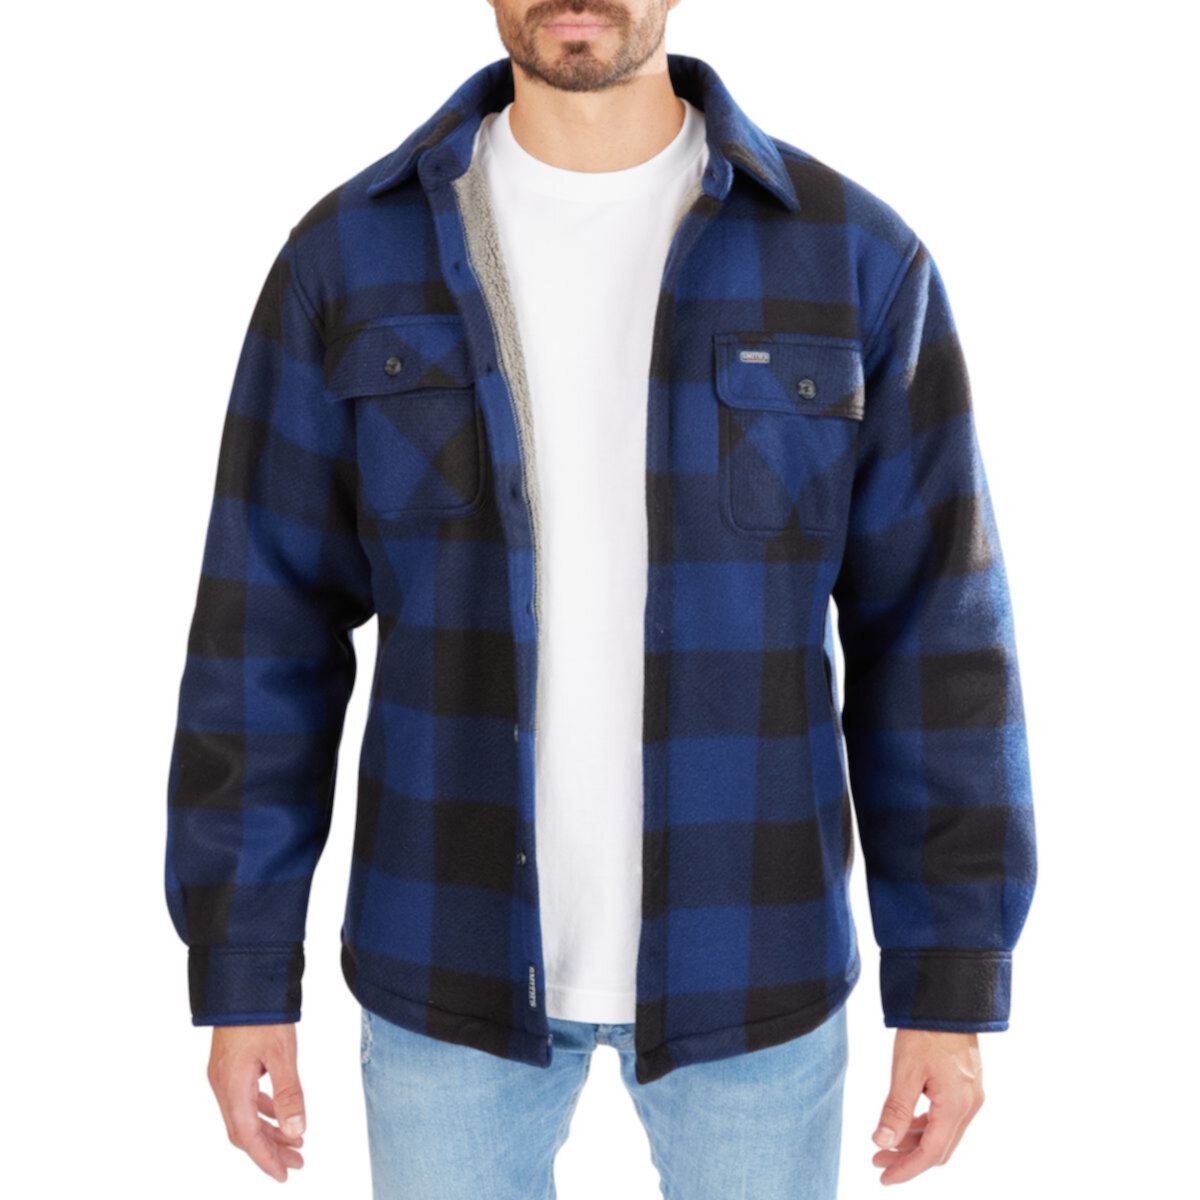 Мужская куртка-рубашка из микрофлиса на подкладке из шерпы с подкладкой Smith's Workwear Smith's Workwear